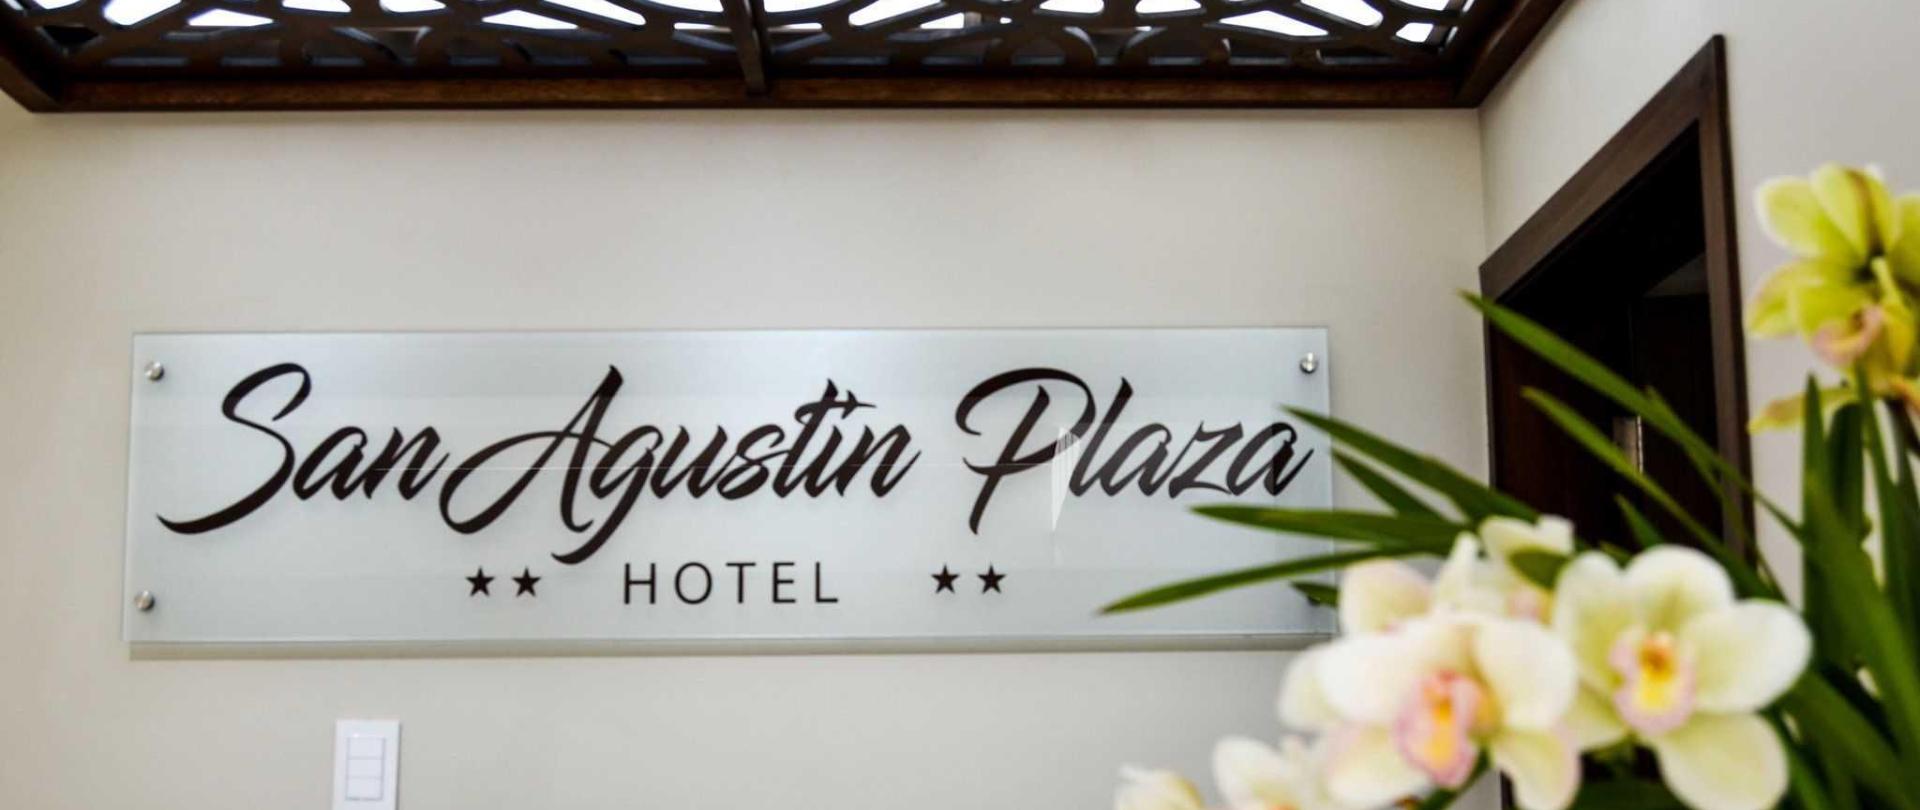 San Agustin Plaza Hotel Latacunga Ecuador